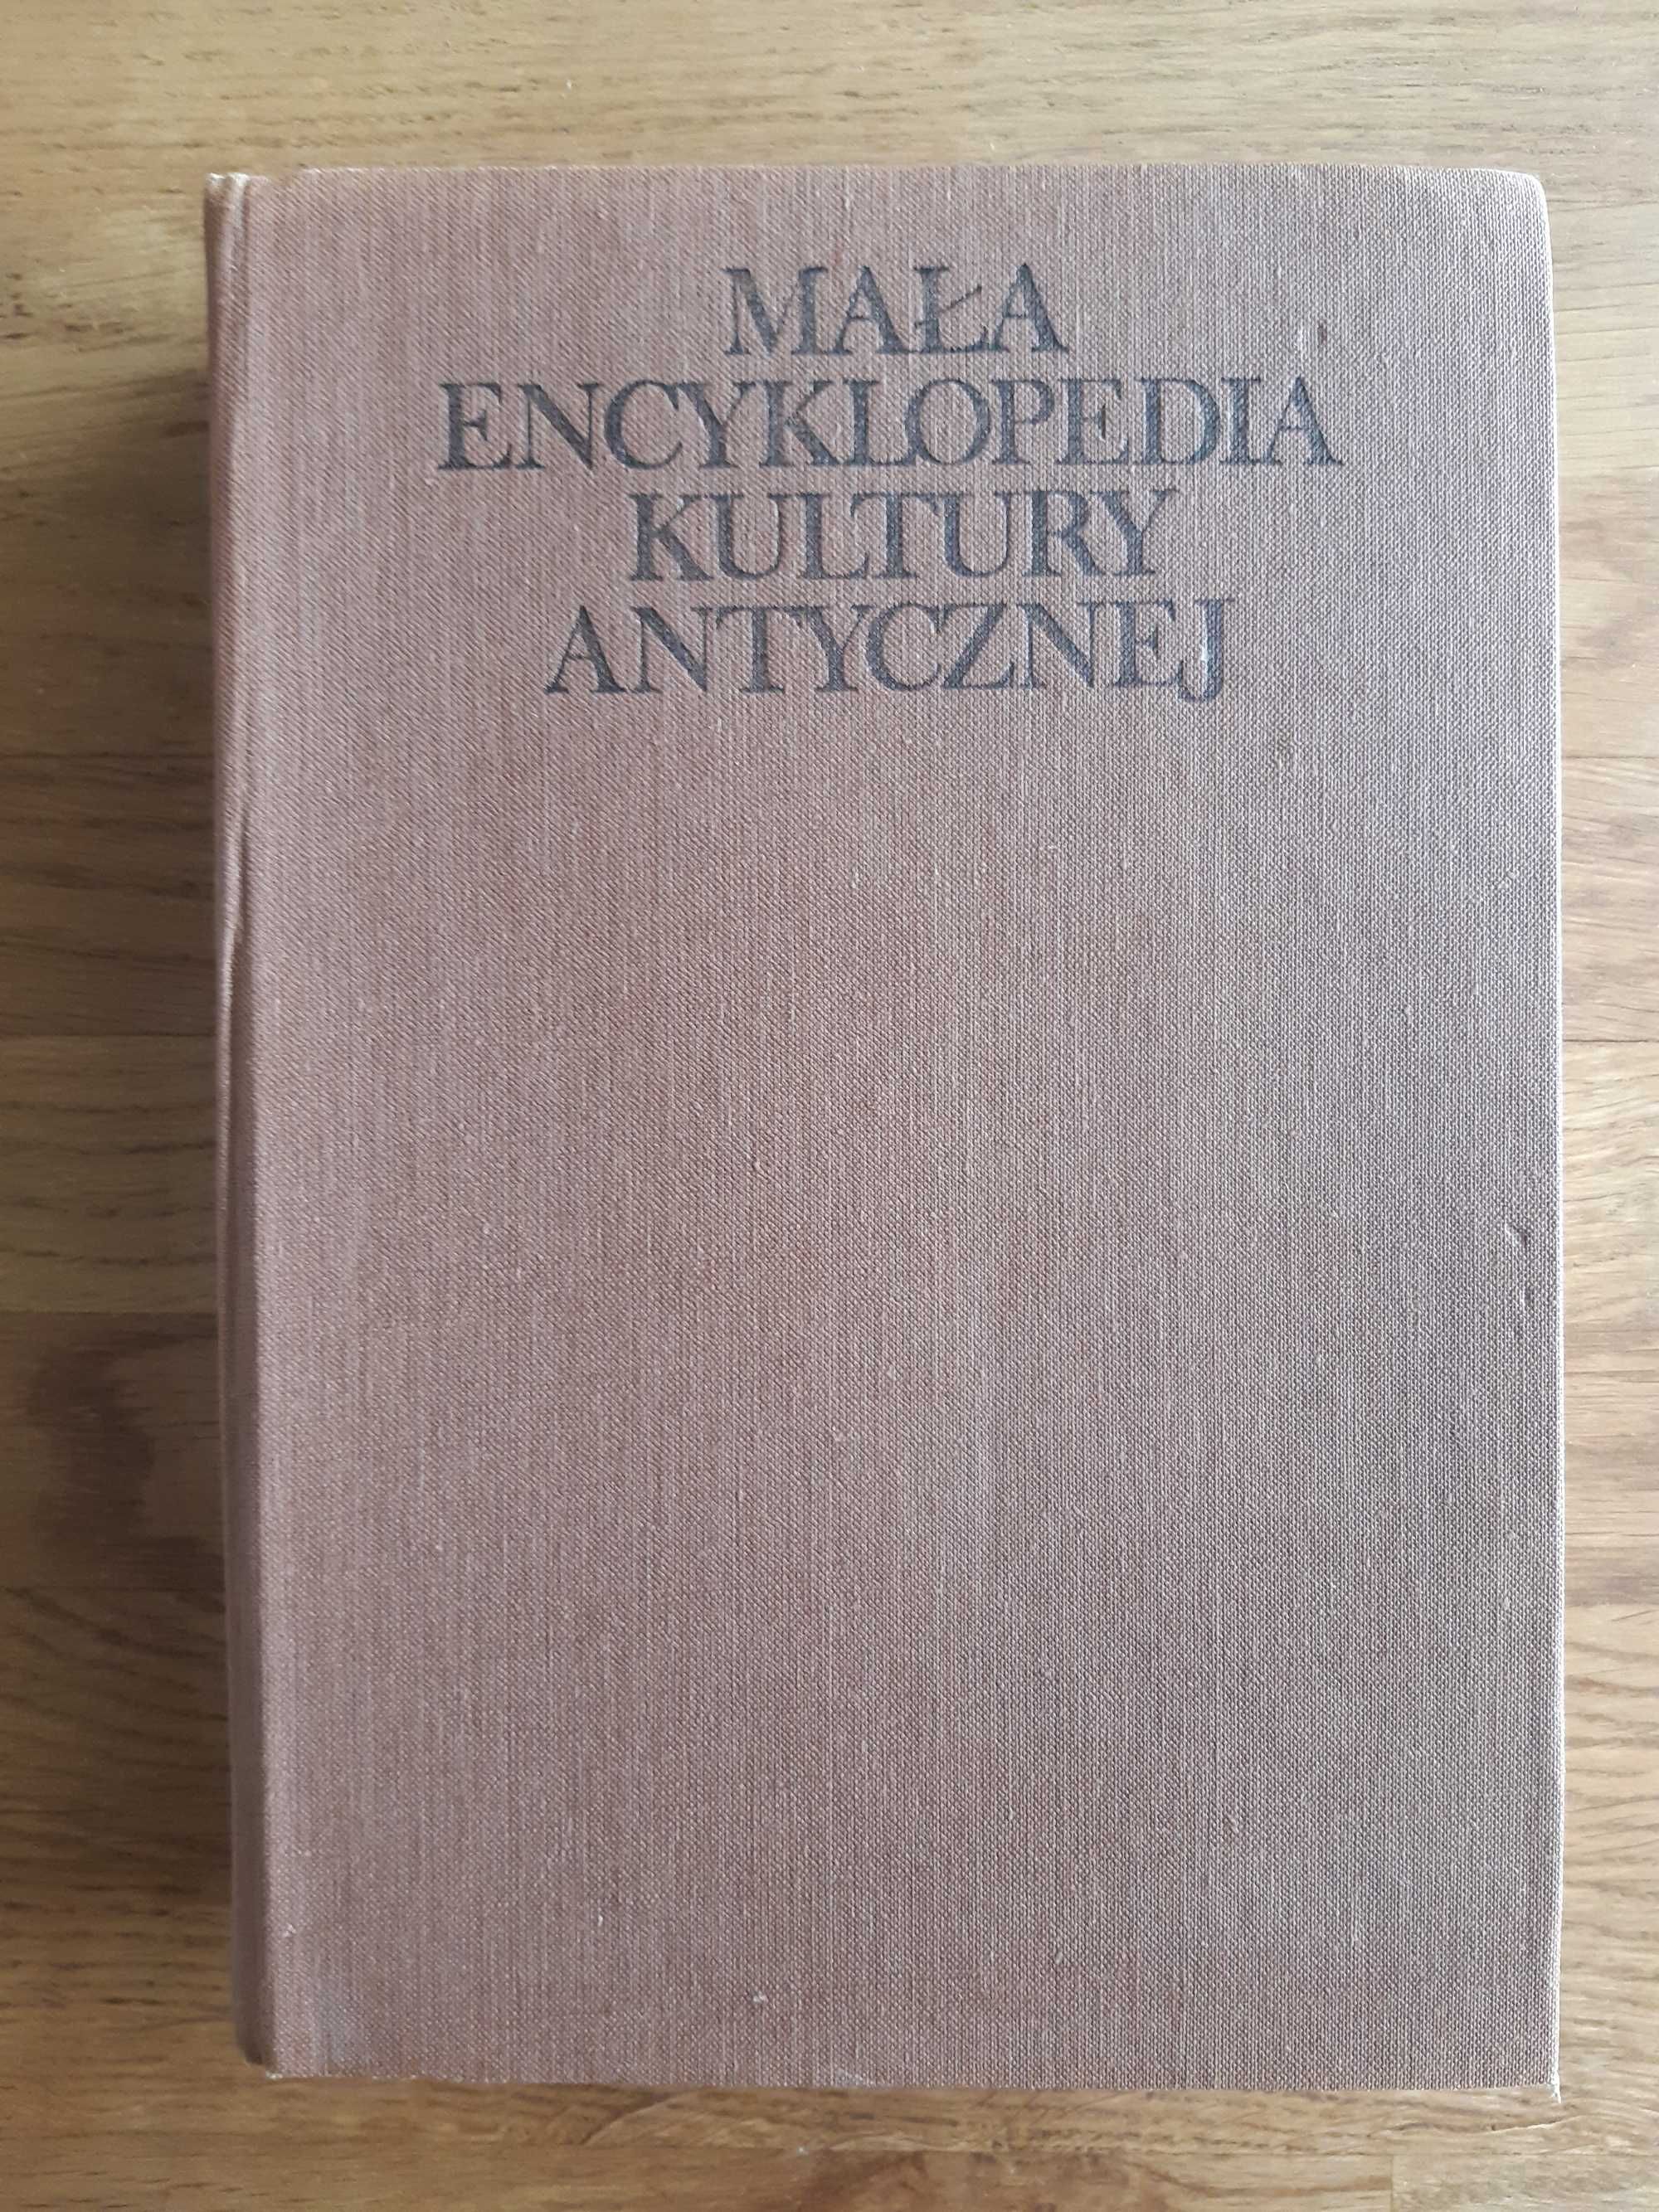 Mała encyklopedia kultury antycznej A-Z